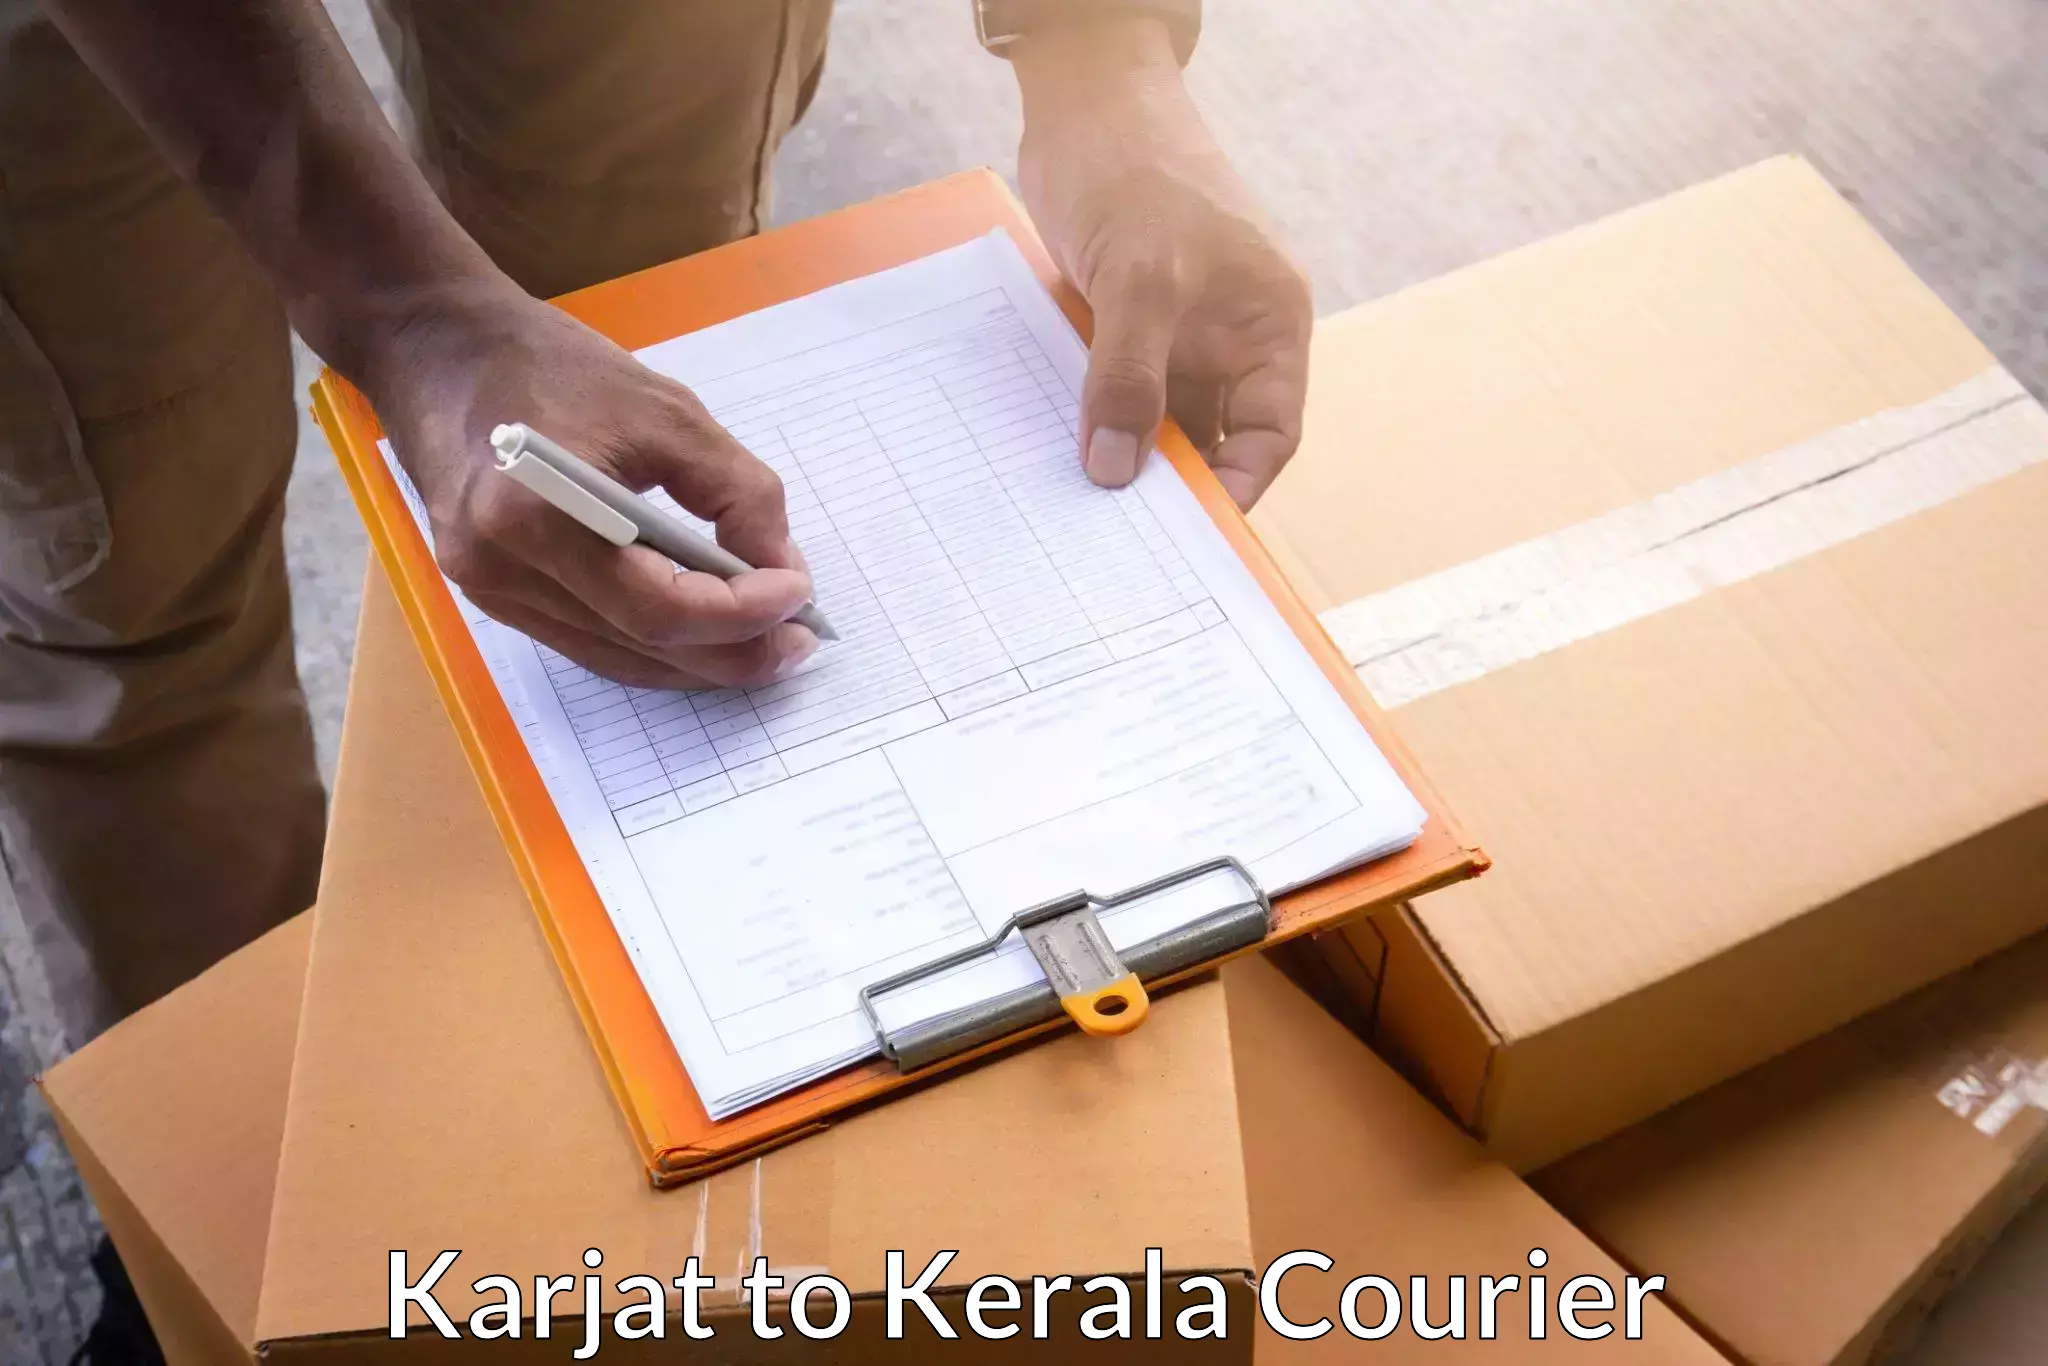 Nationwide shipping capabilities Karjat to Cochin Port Kochi